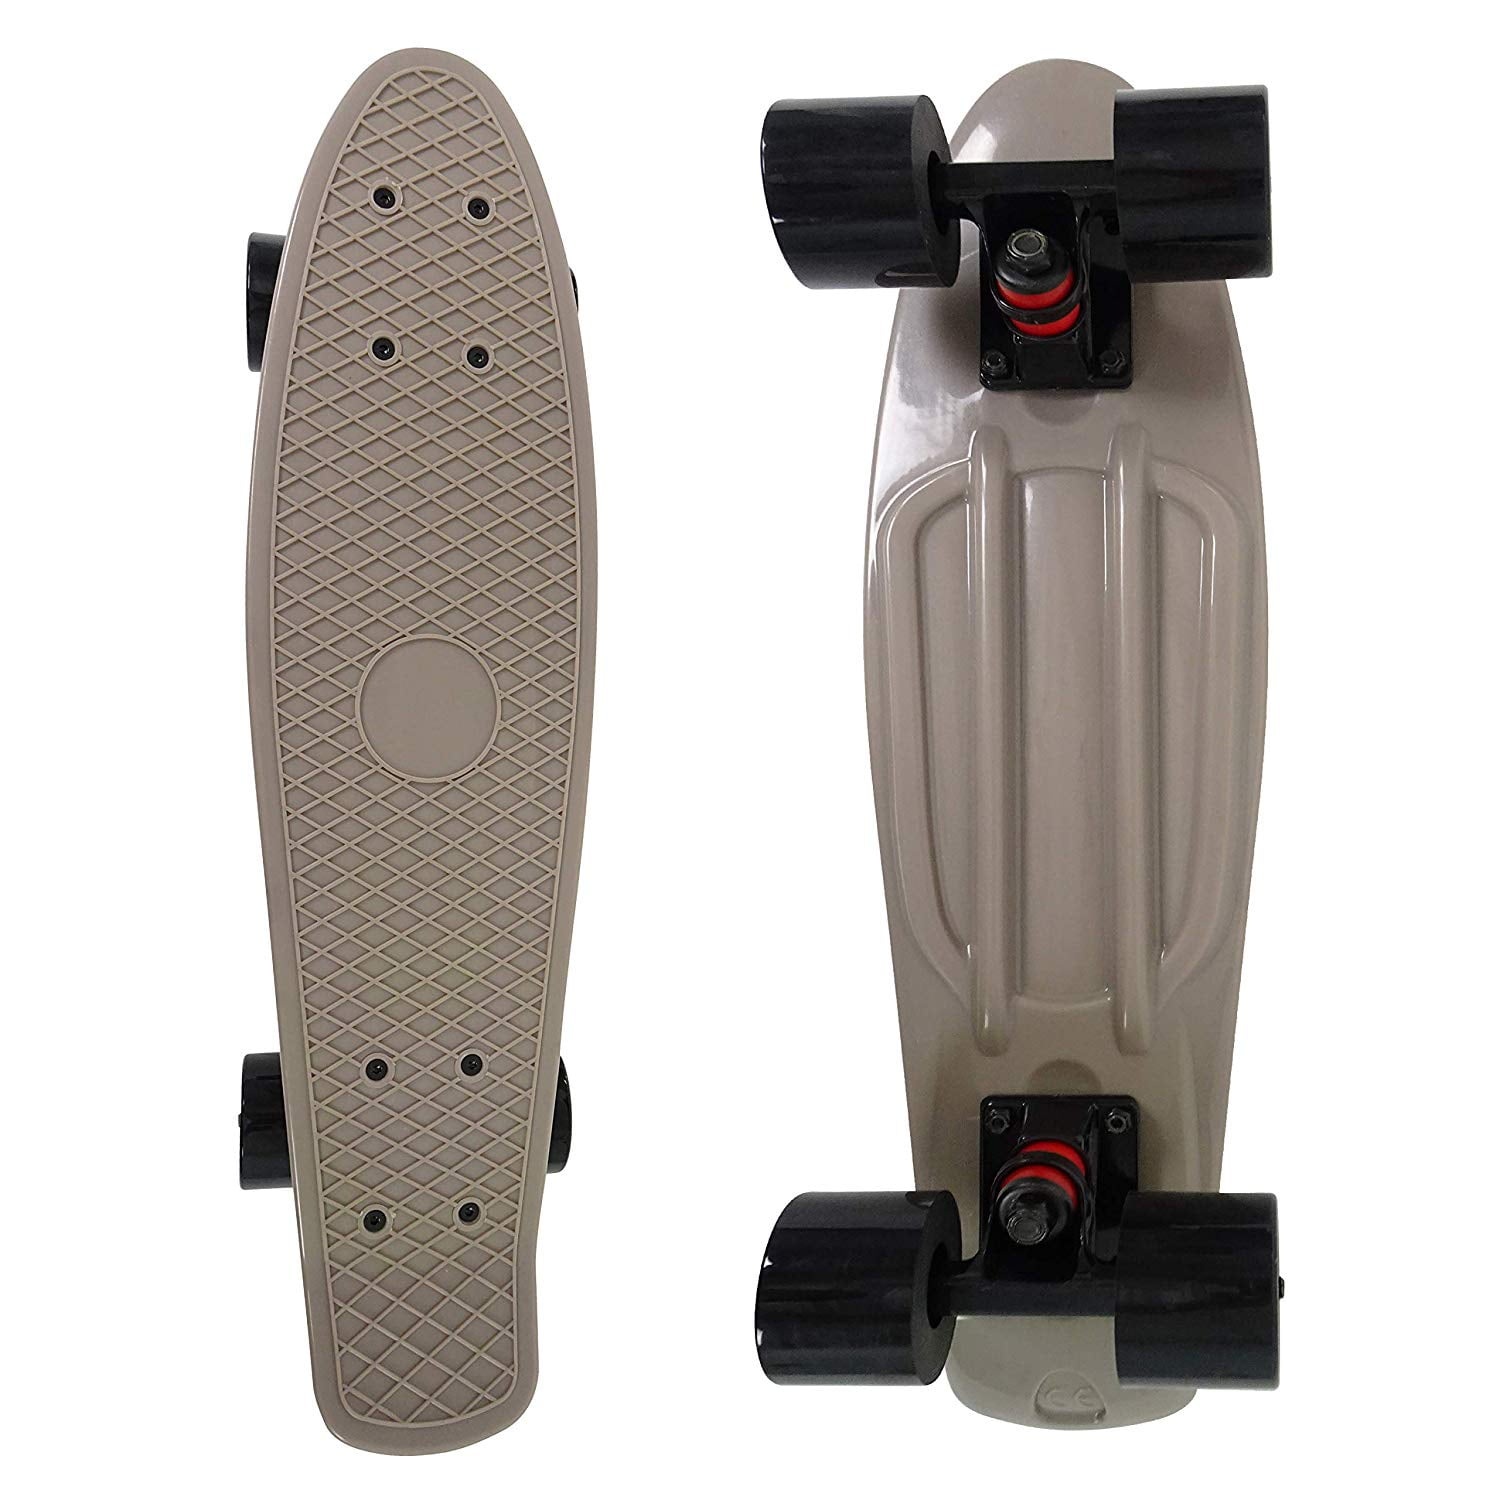 veZve Mini Cruiser Skateboard Complete for Kids Boys Girls, 22 inch, 59mm, Gray